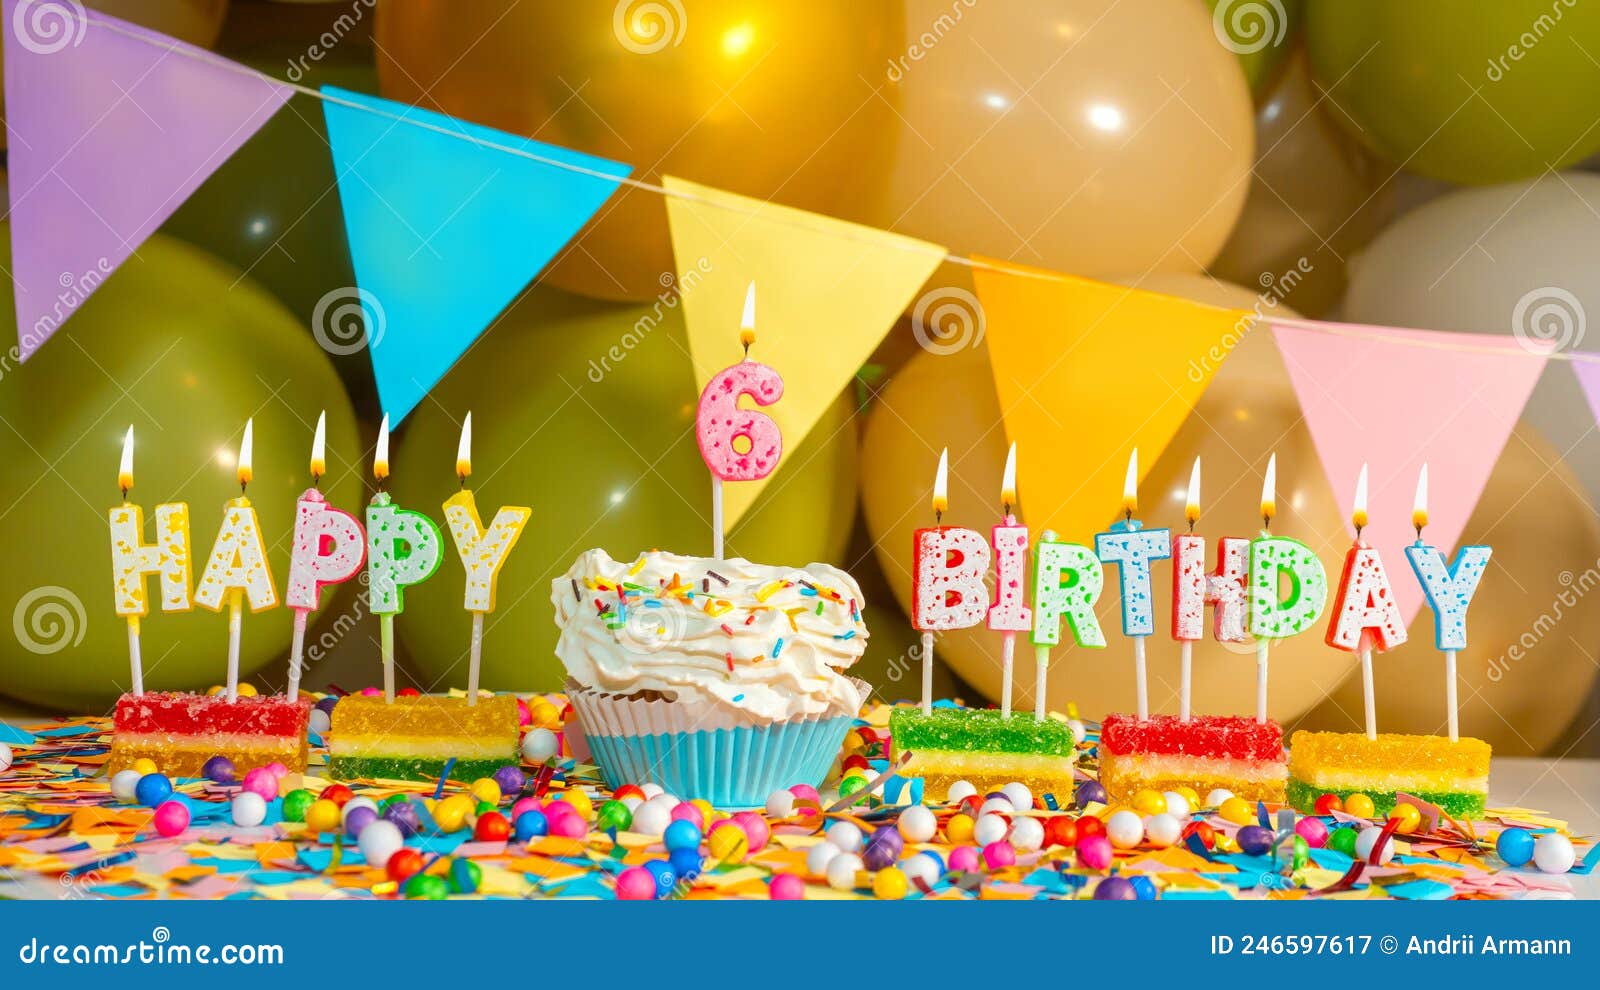 Cartolina d'auguri di buon compleanno con torta e scritte con candele su  sfondo rosa